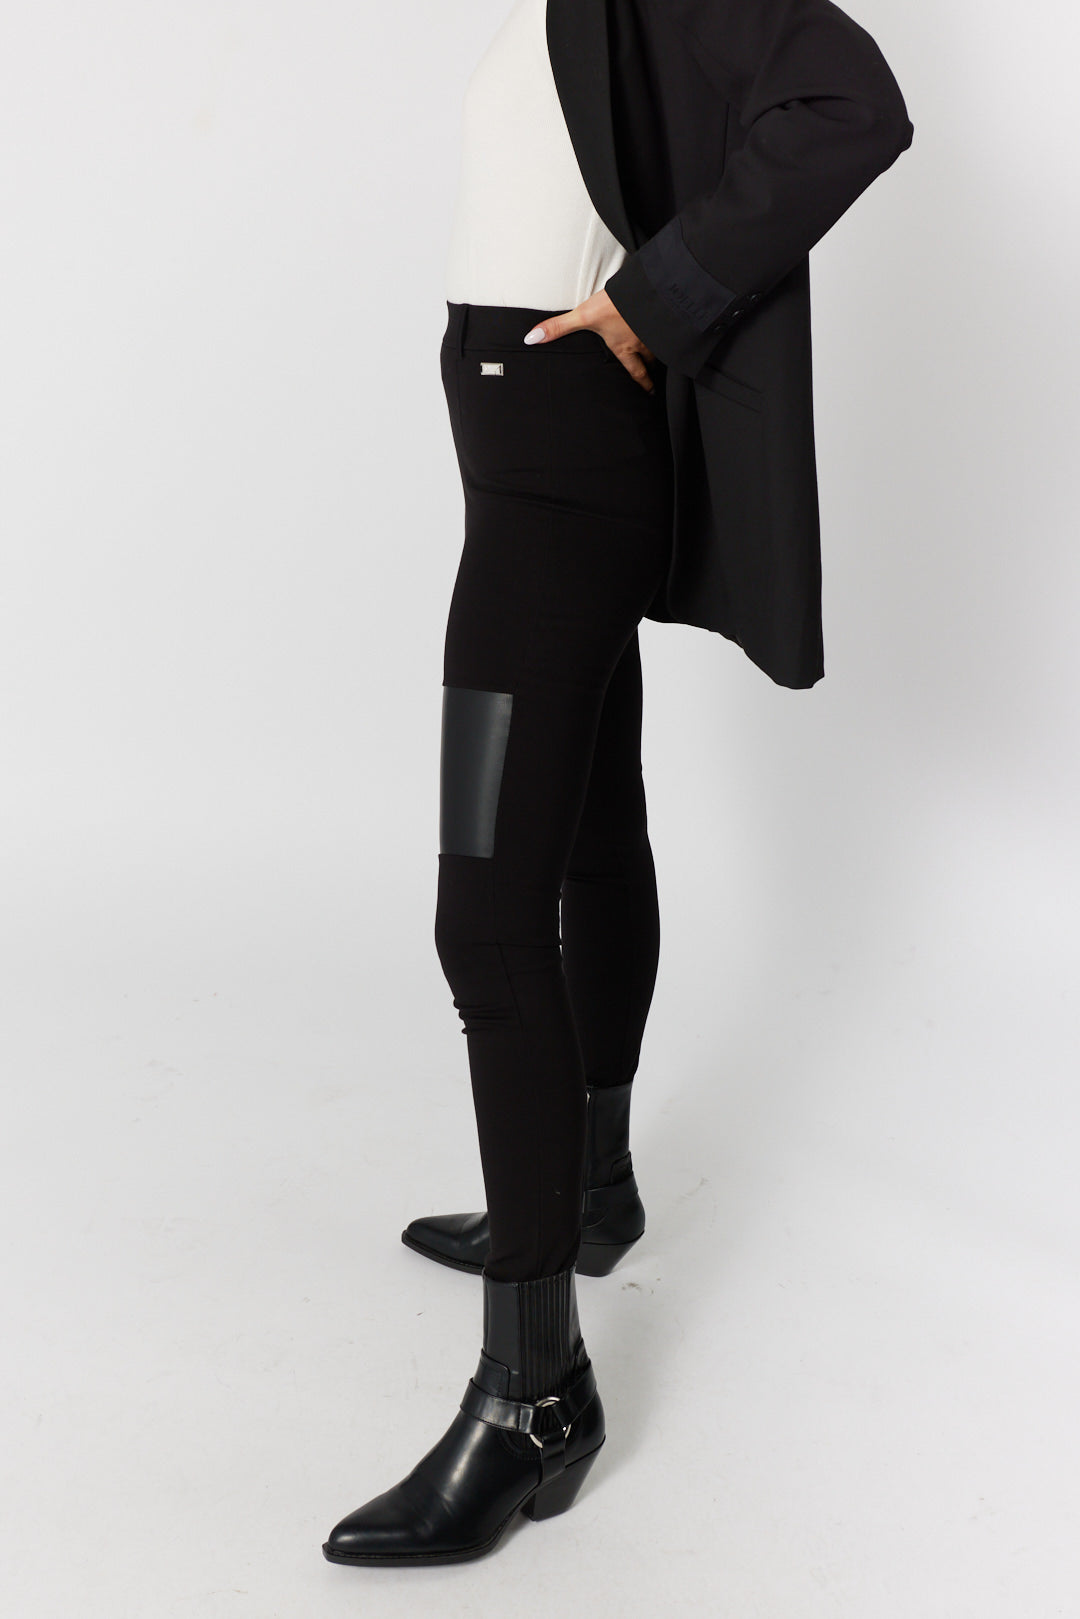 Pantalon legging noir pour femme, Louiselle